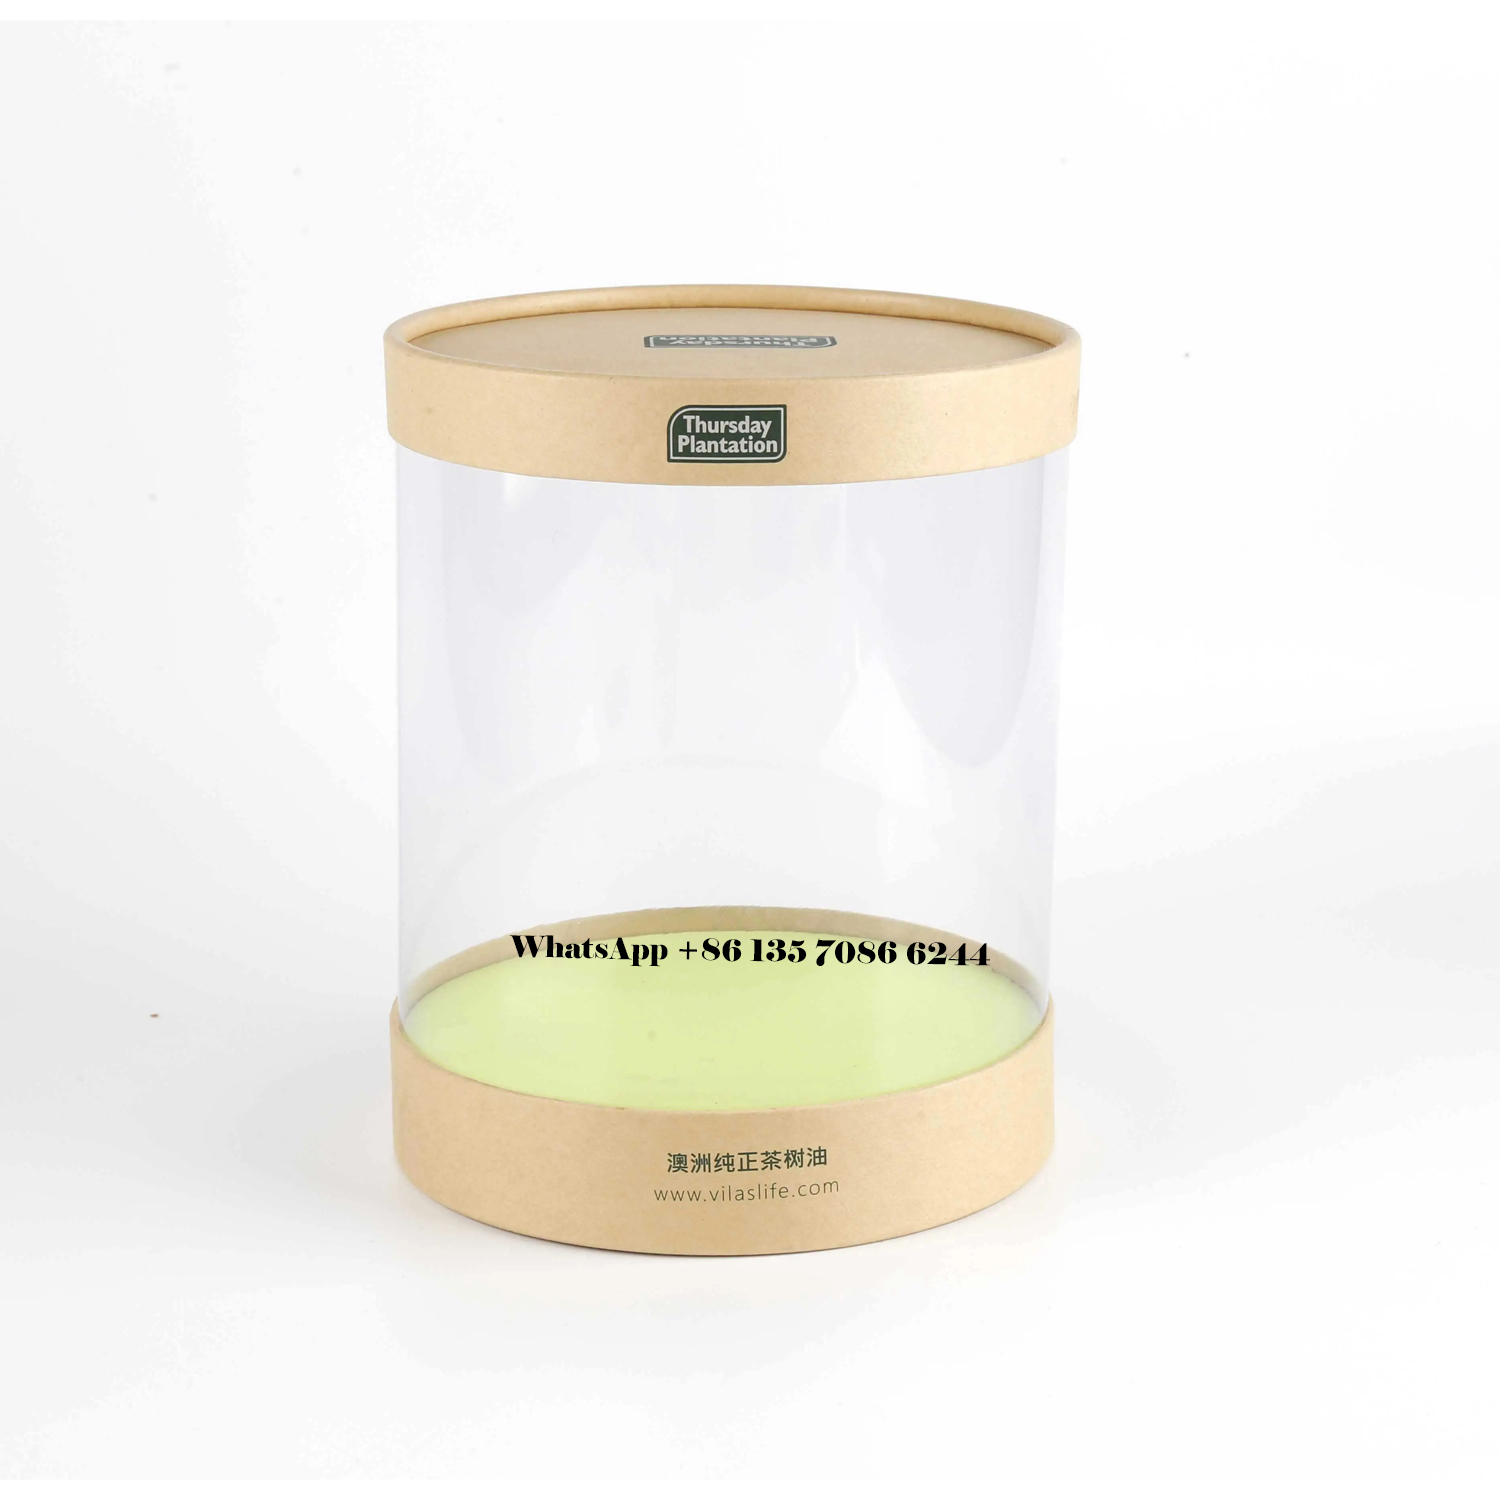  Упаковочные коробки из переработанной бумаги для роскошного семенного масла оптом  